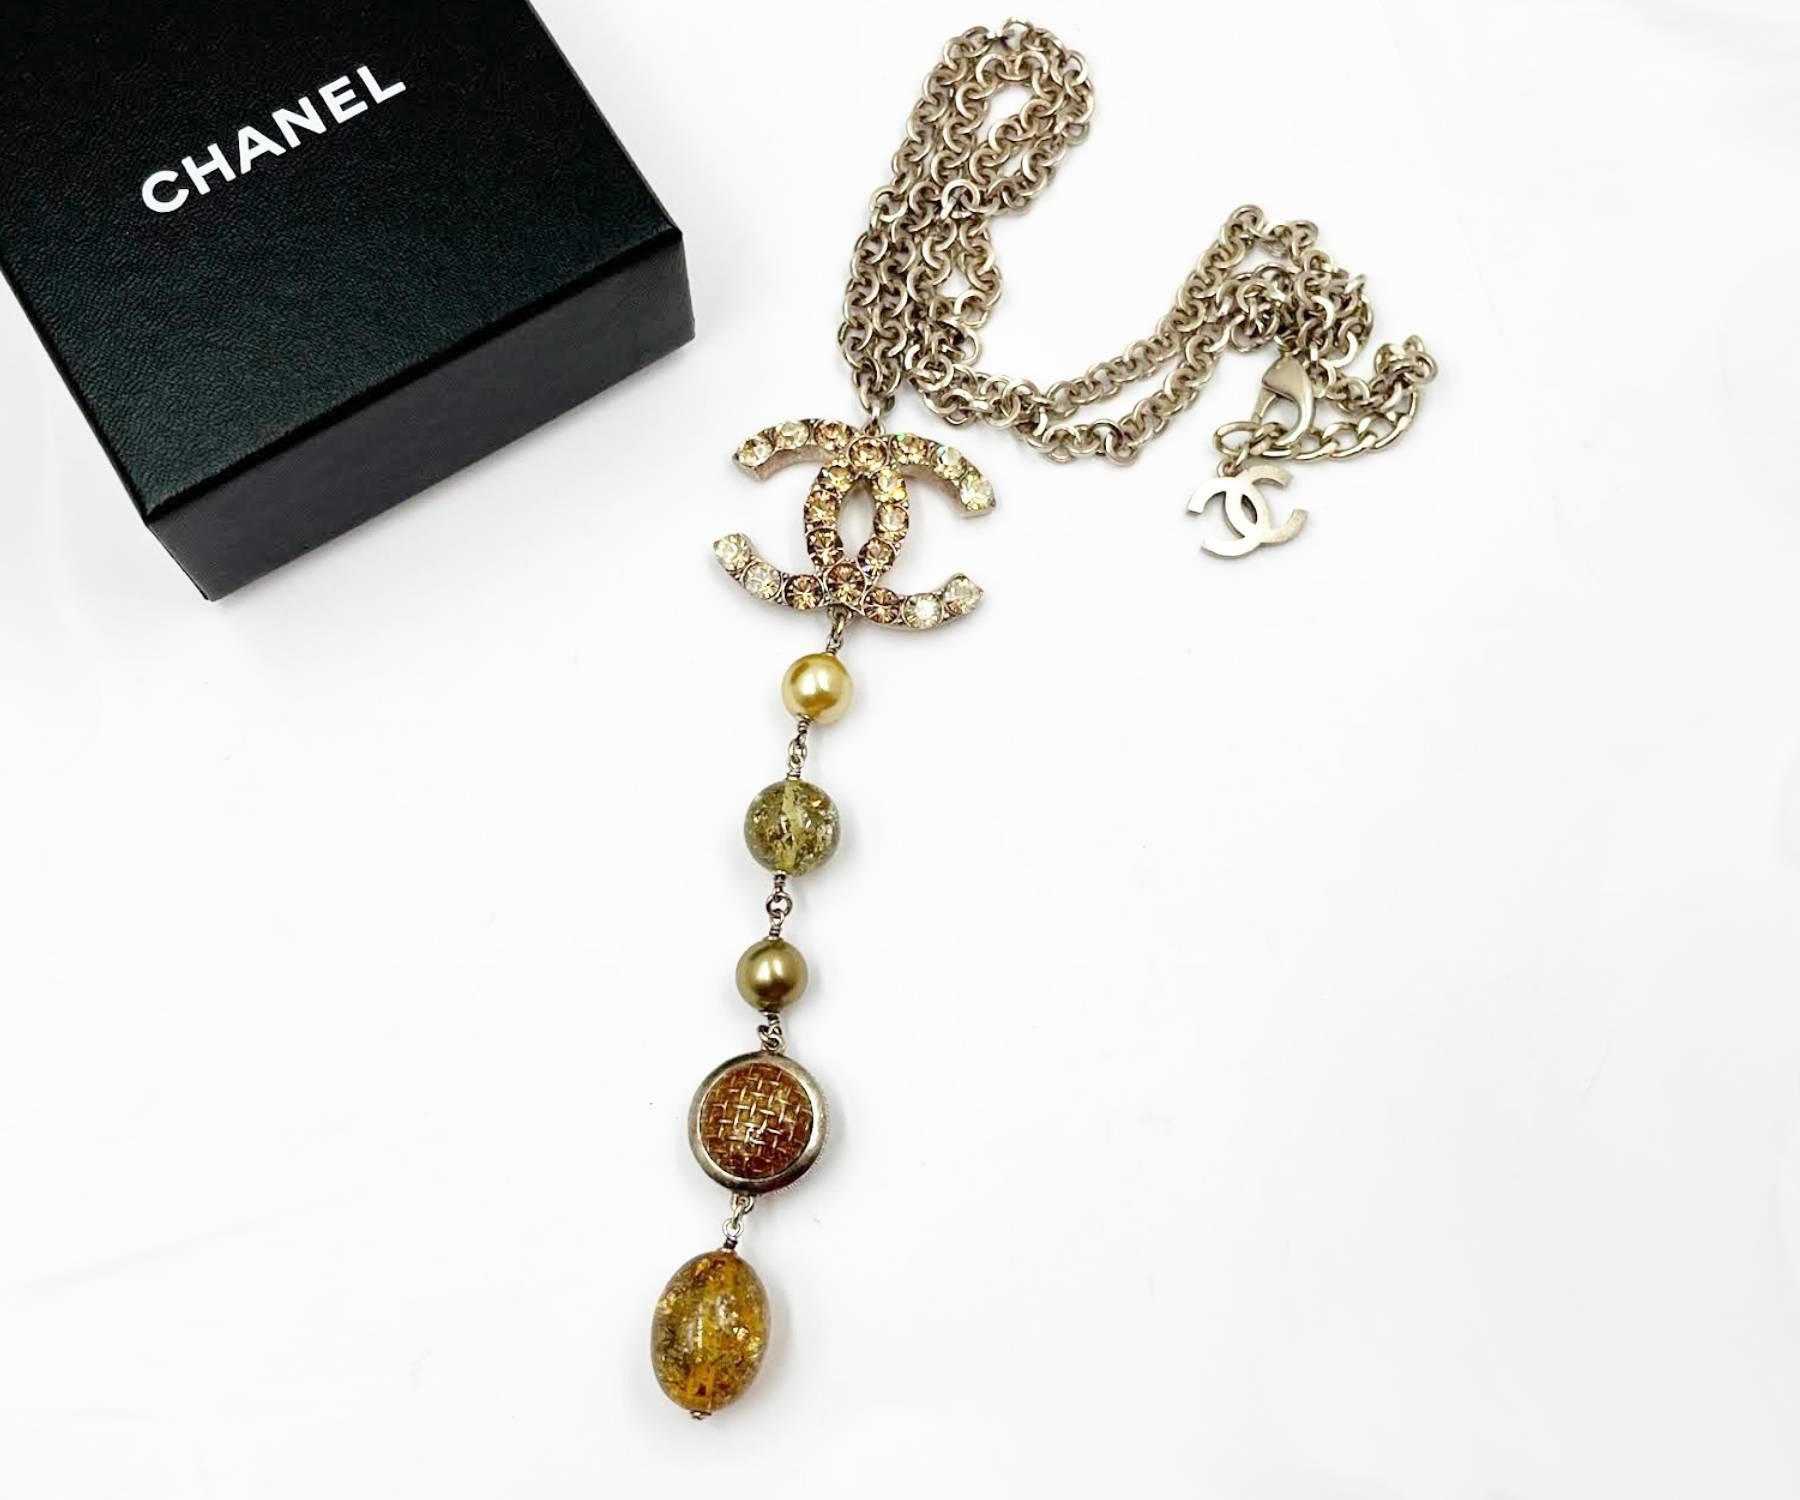 Chanel Rare Gold CC Shiny Gold Crystal Pearl Bead Long Dangle Pendant Necklace

* Marqué 06
*Fabriqué en France
*Vient avec la boîte d'origine

-Le pendentif mesure approximativement 5,75″ x 1,5″.
-La chaîne la plus longue mesure environ 26″ de